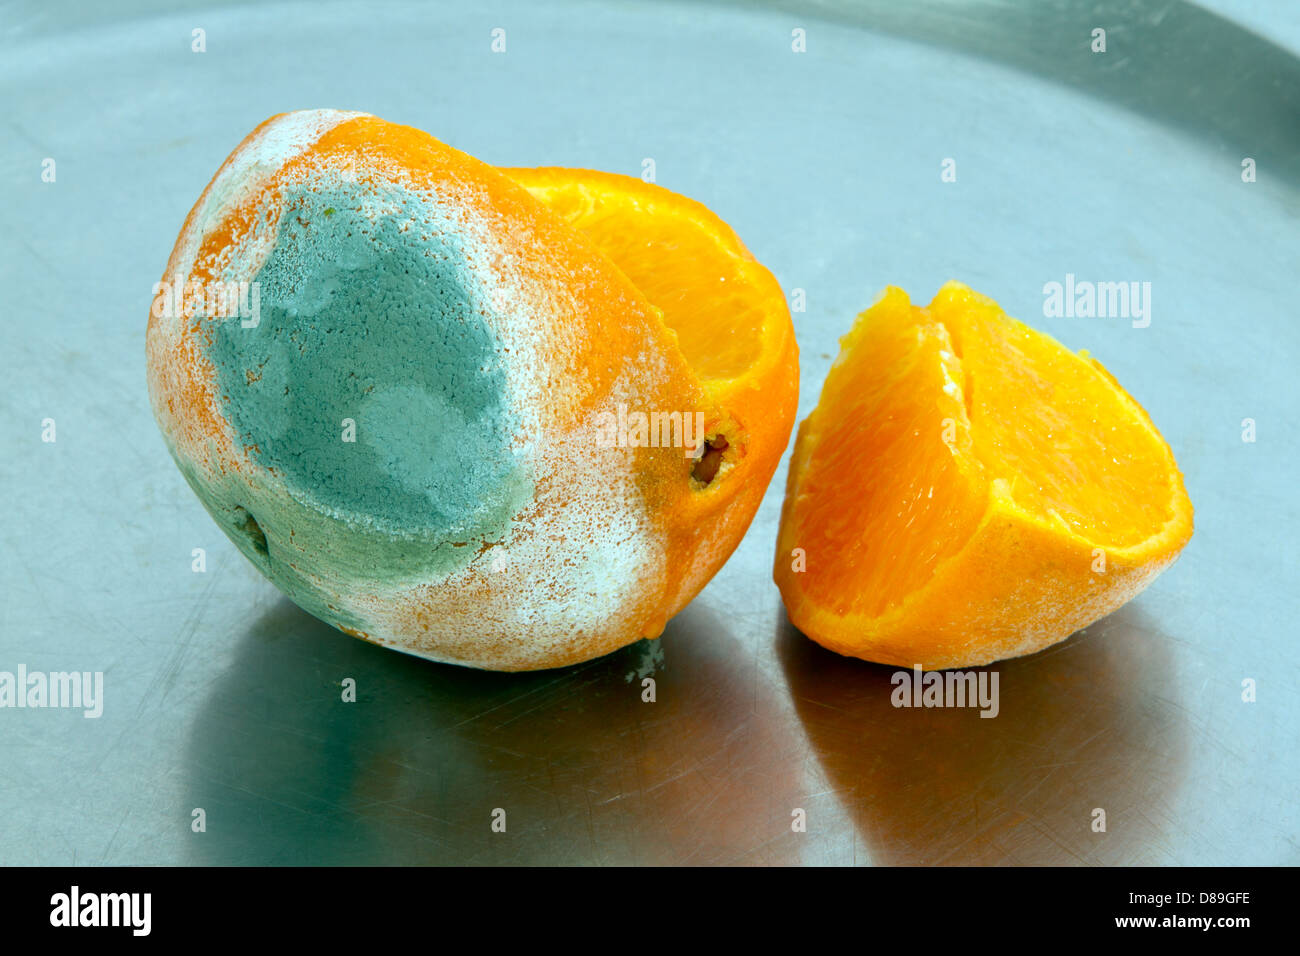 Les fruits pourris, couper l'orange moisie Banque D'Images